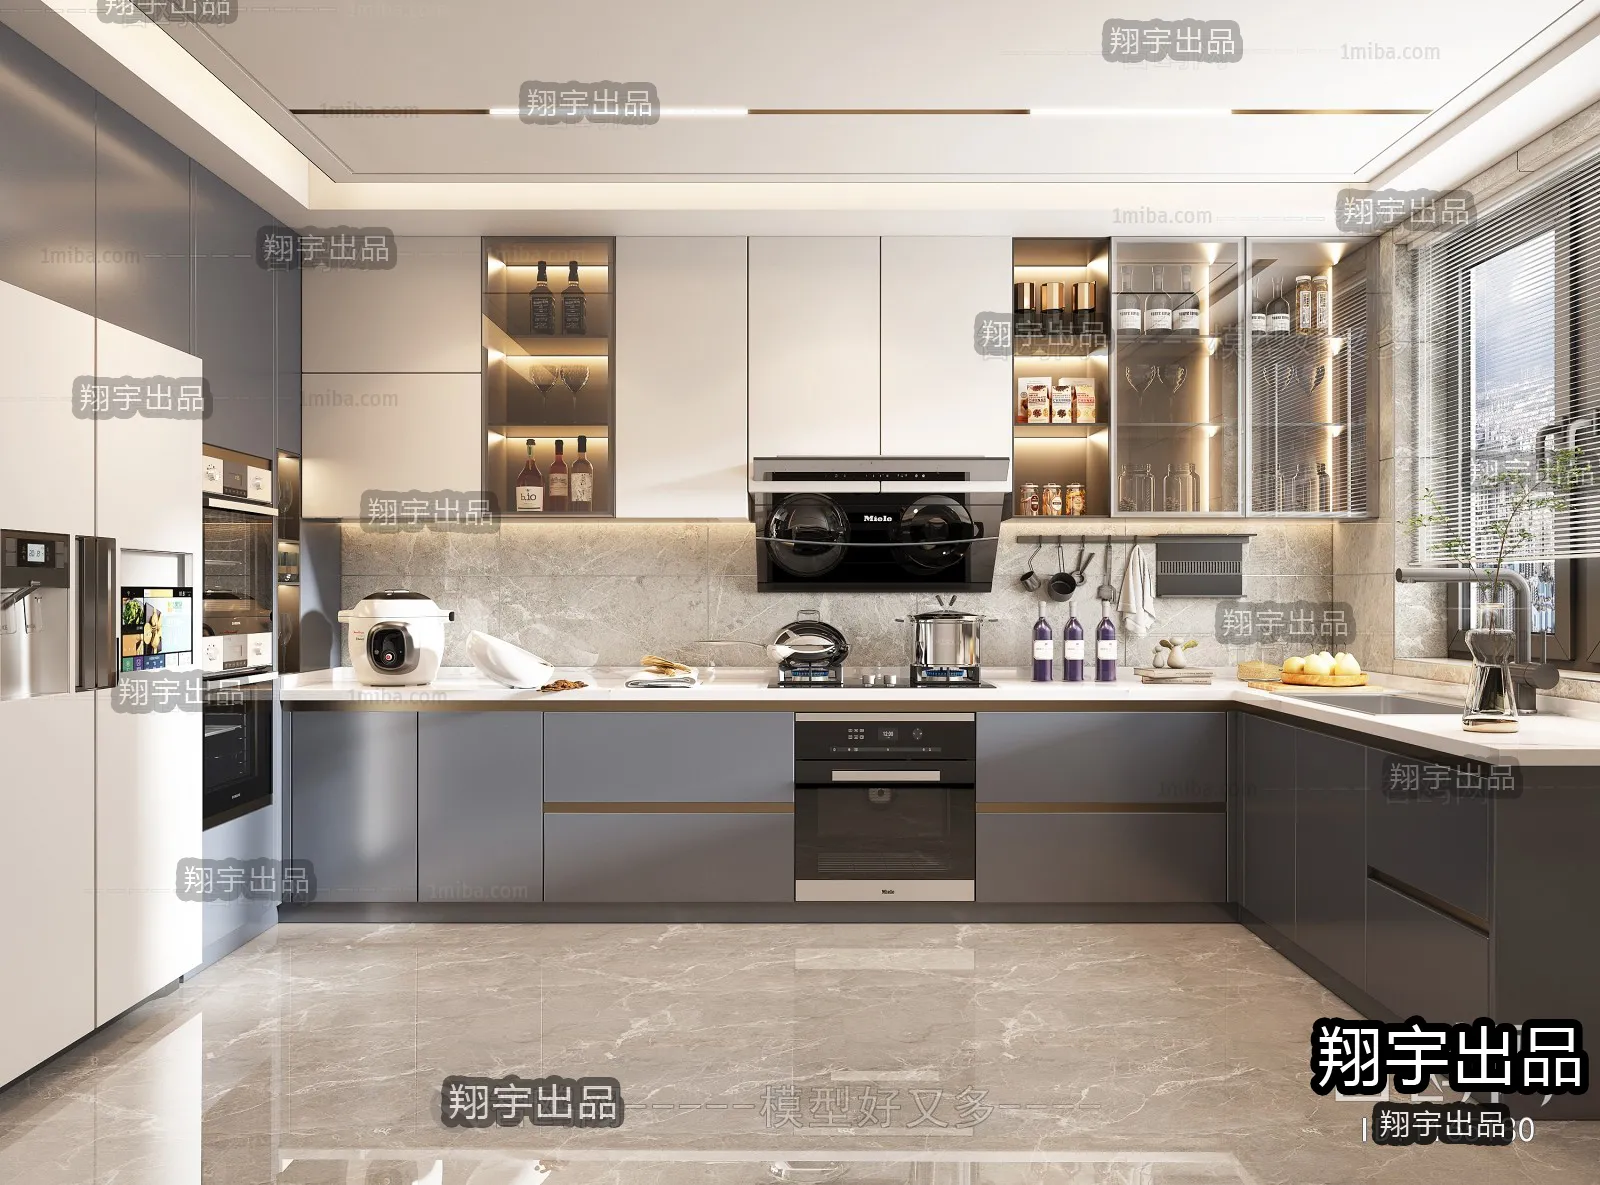 Kitchen – Modern Interior Design – 3D Models – 008